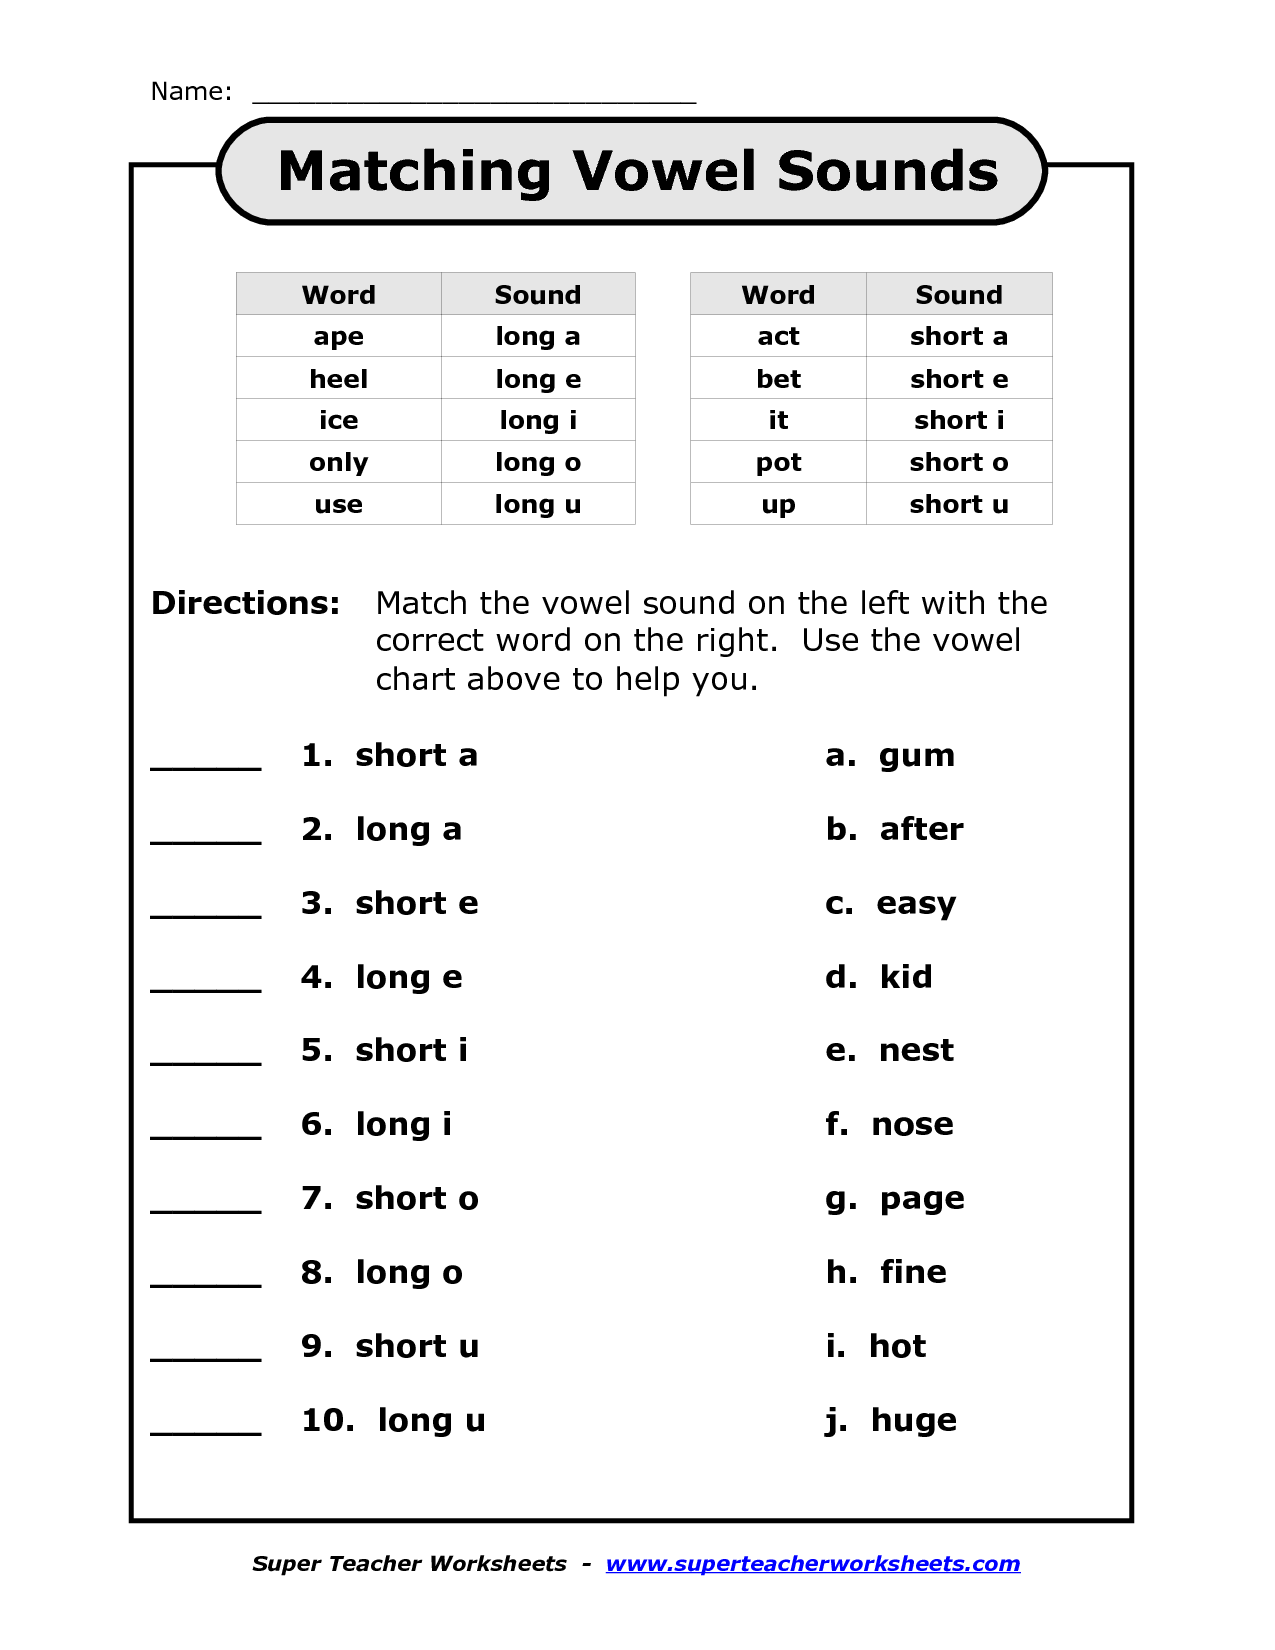 Vowels Worksheets For 3rd Grade